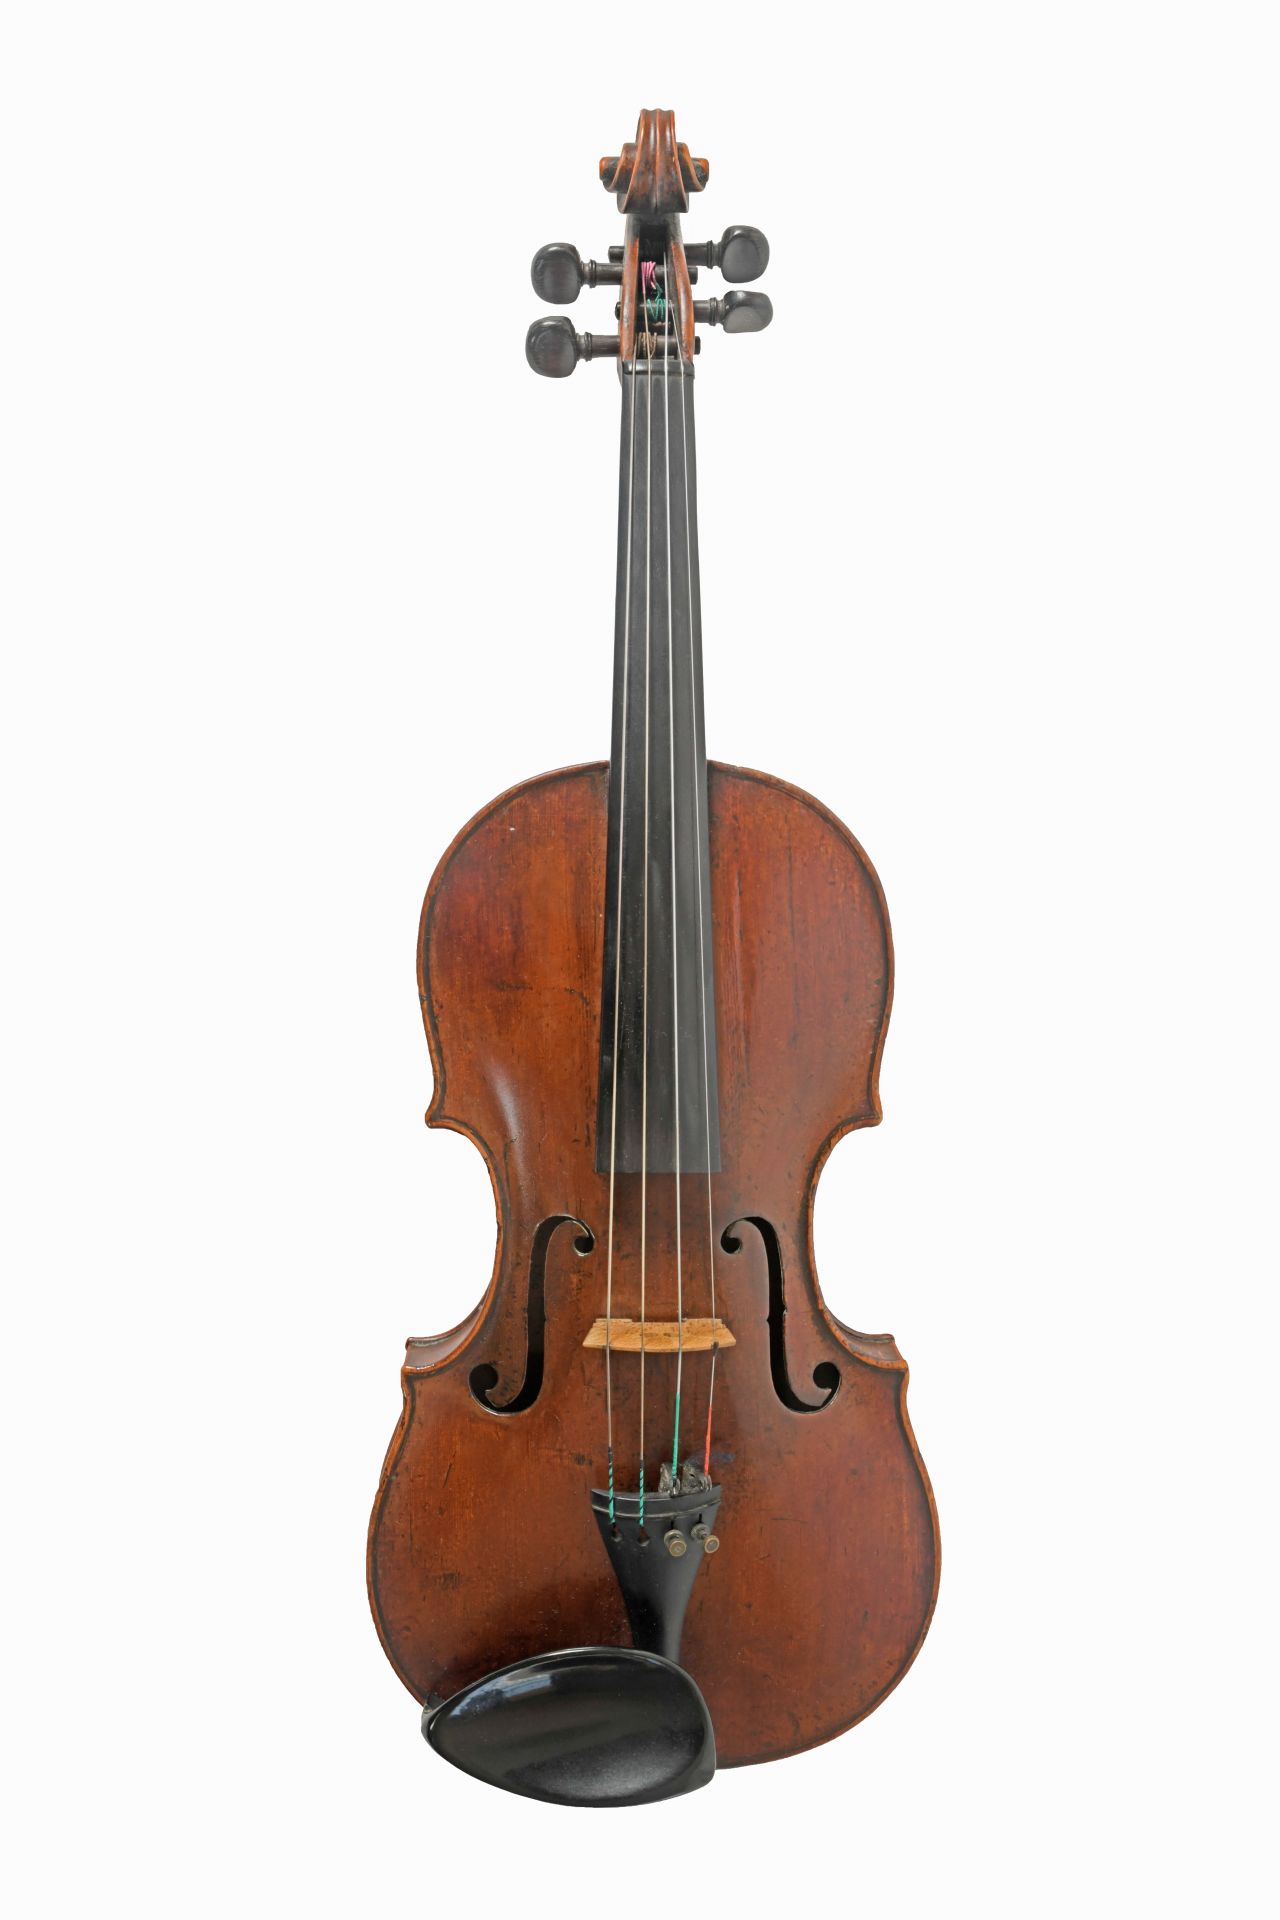 John Johnson violin